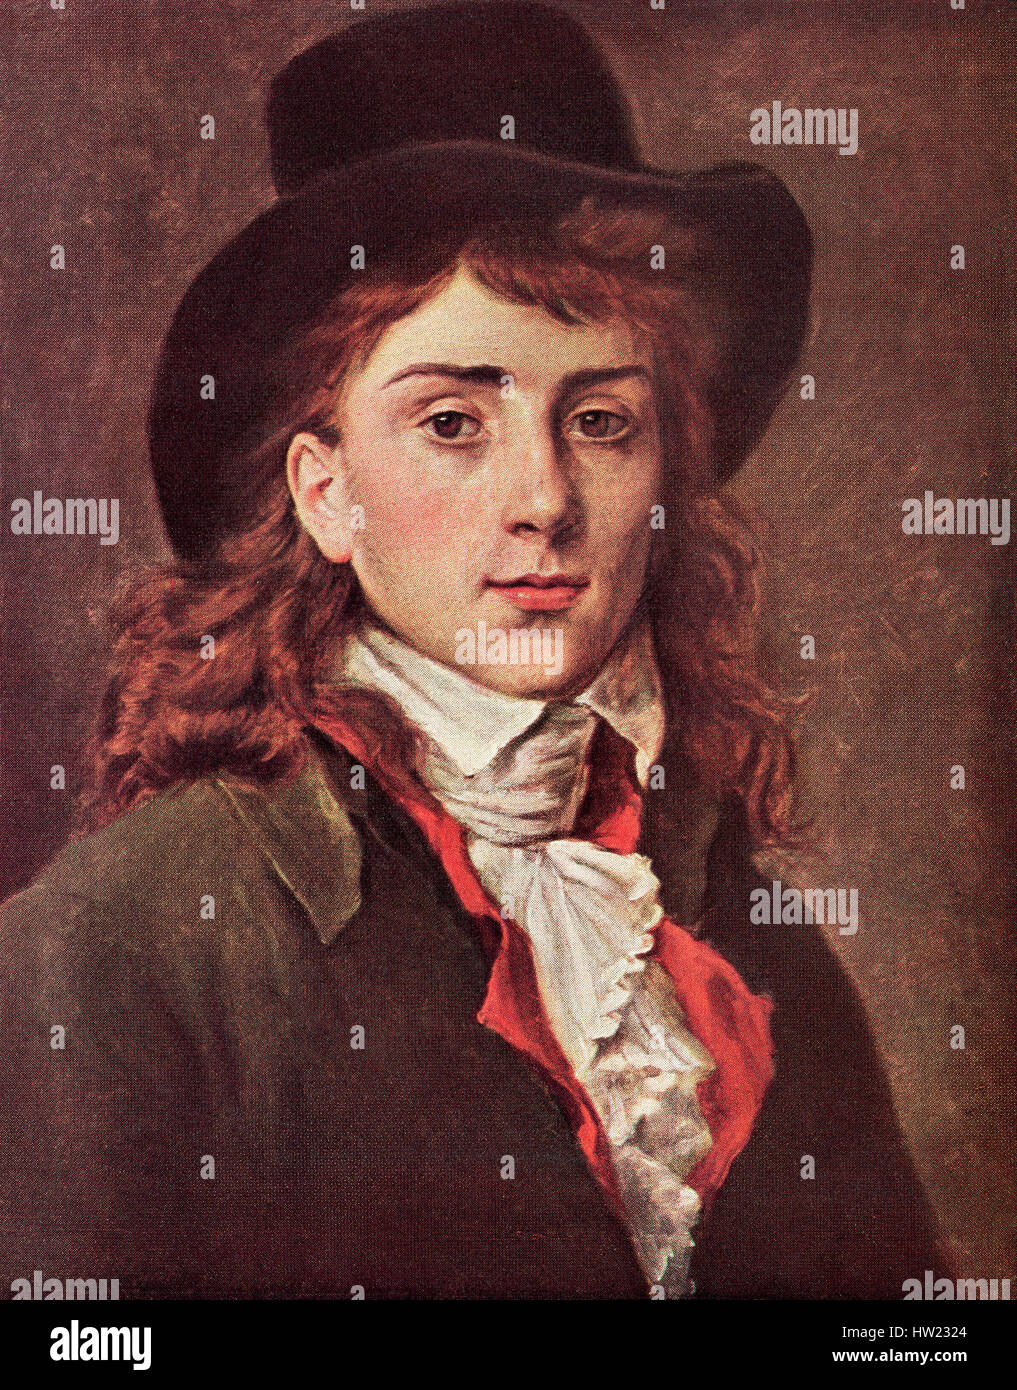 Antoine-Jean Gros, 1771 - 1835, alias El Barón Gros. La historia de Francia y pintor neoclásico. . Foto de stock